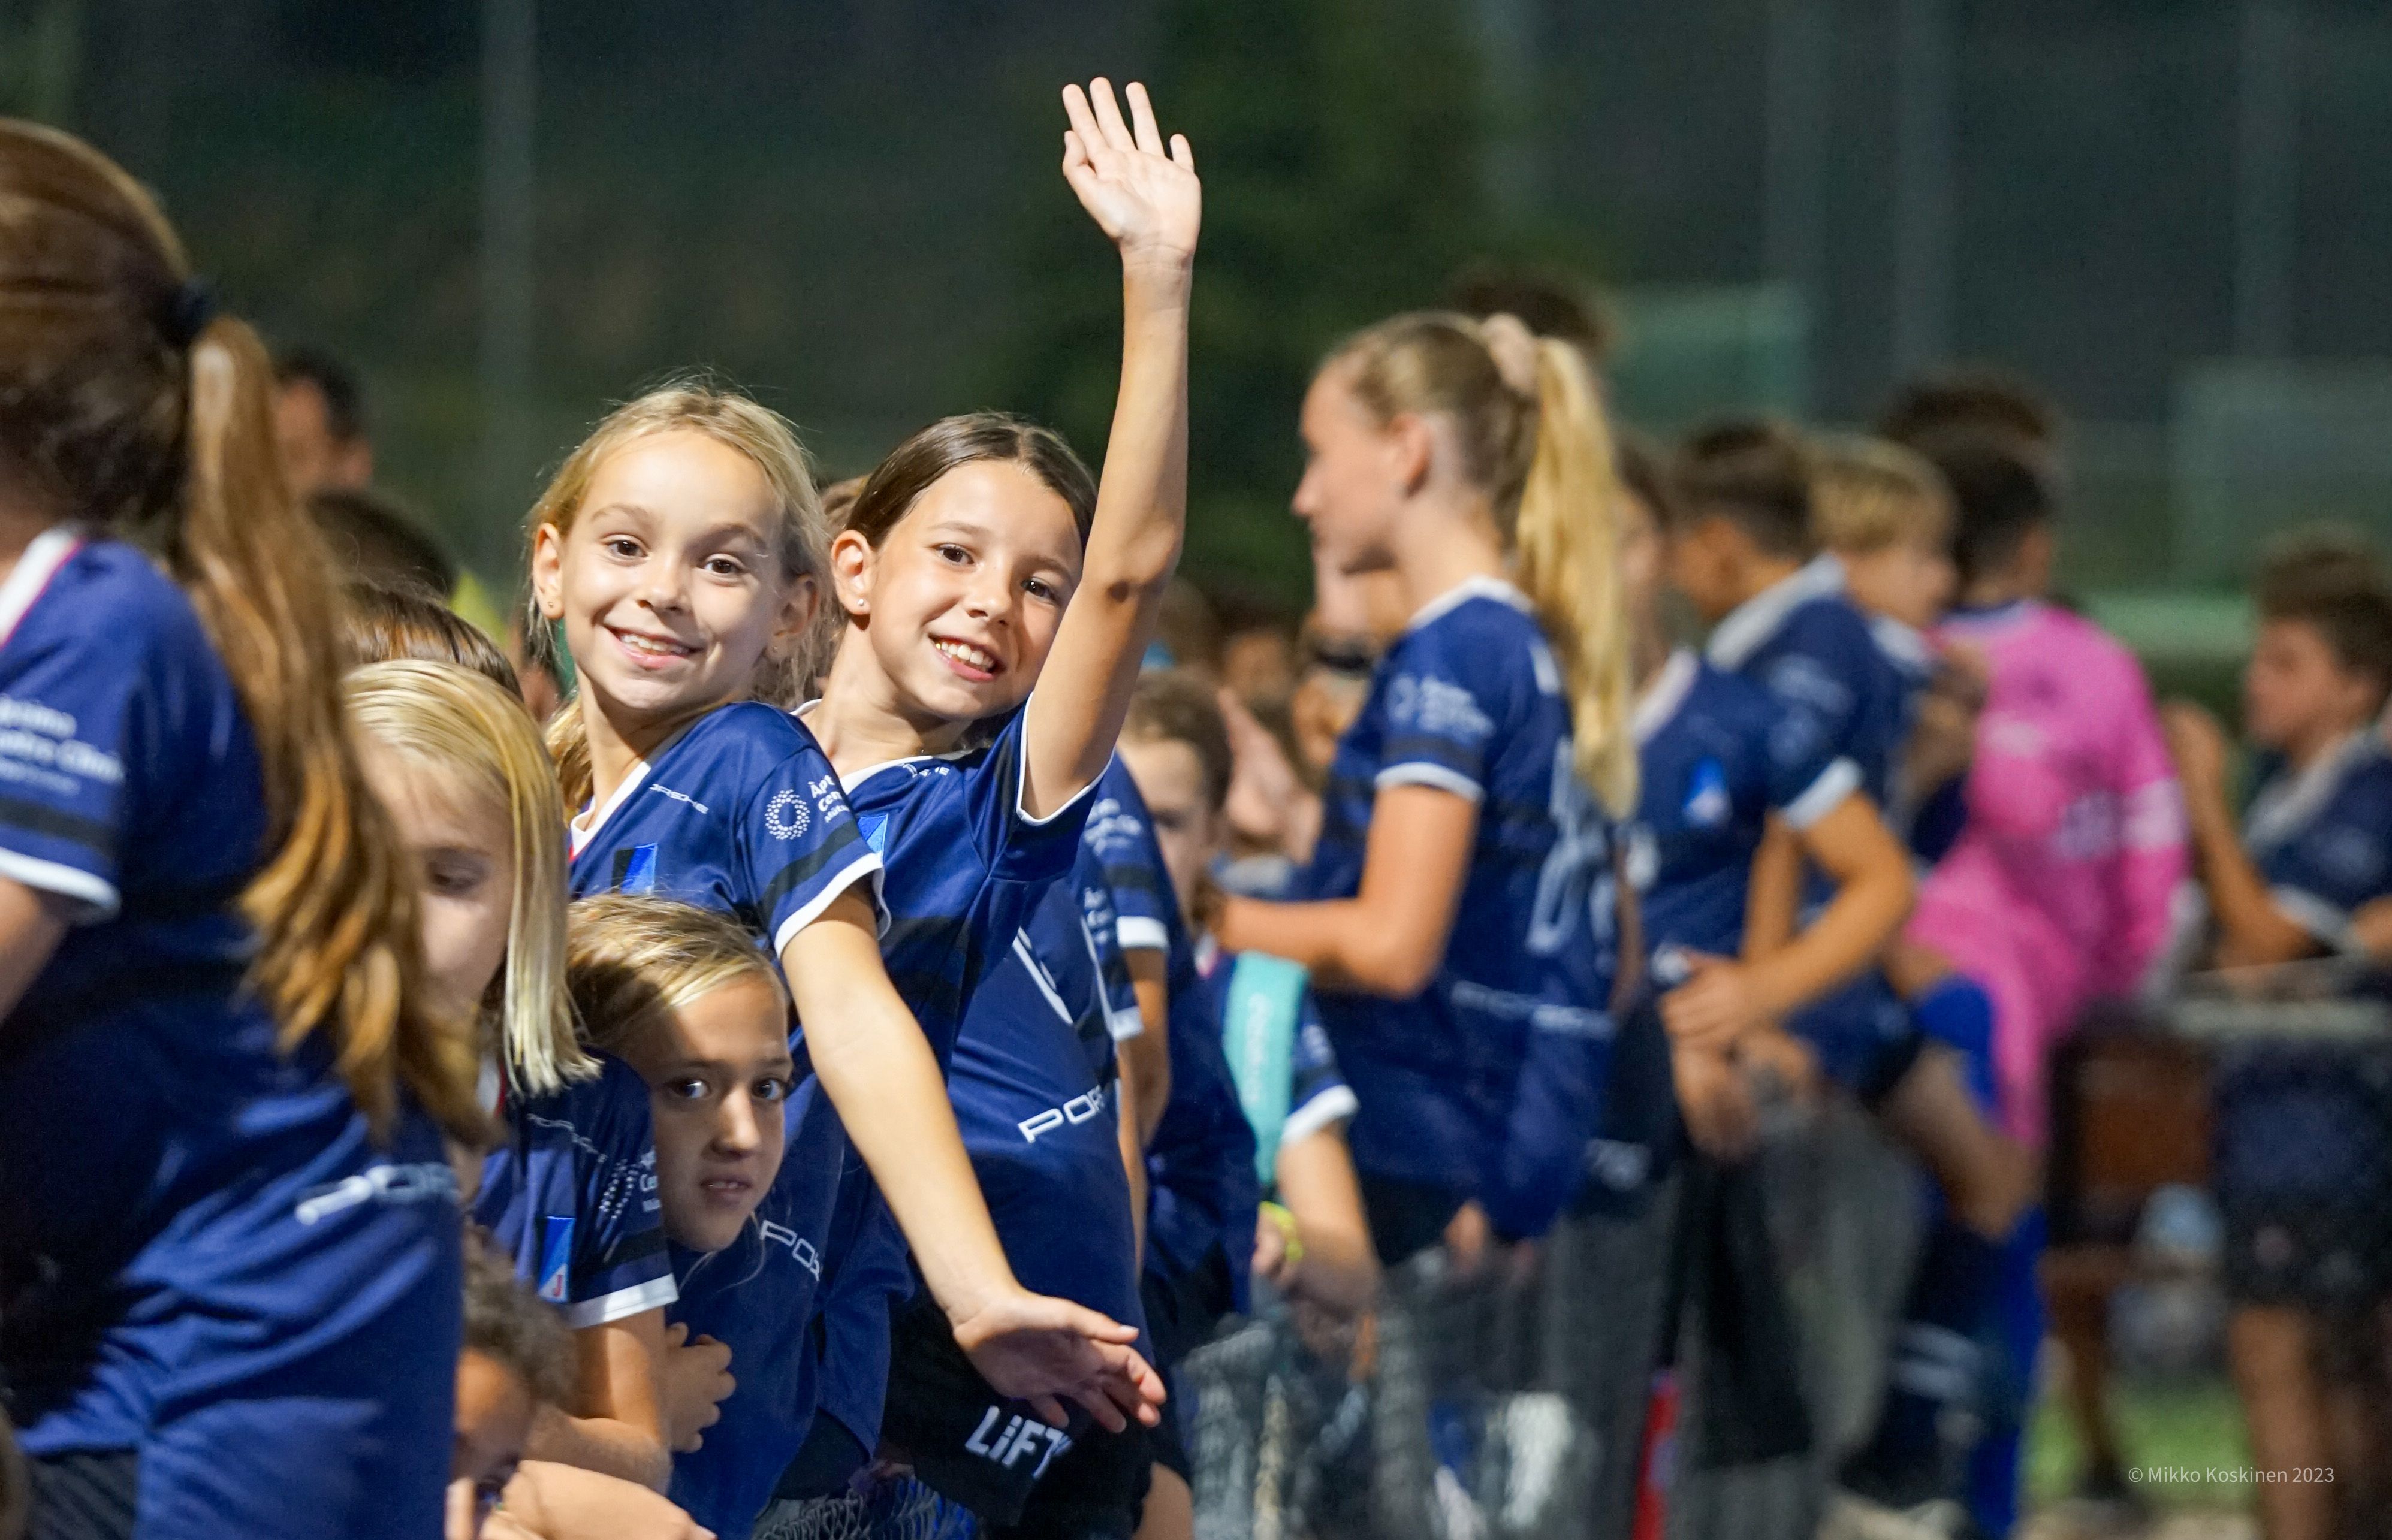 Presentació d'equips de la secció d'hoquei del Junior FC. FOTO: Mikko Koskinen